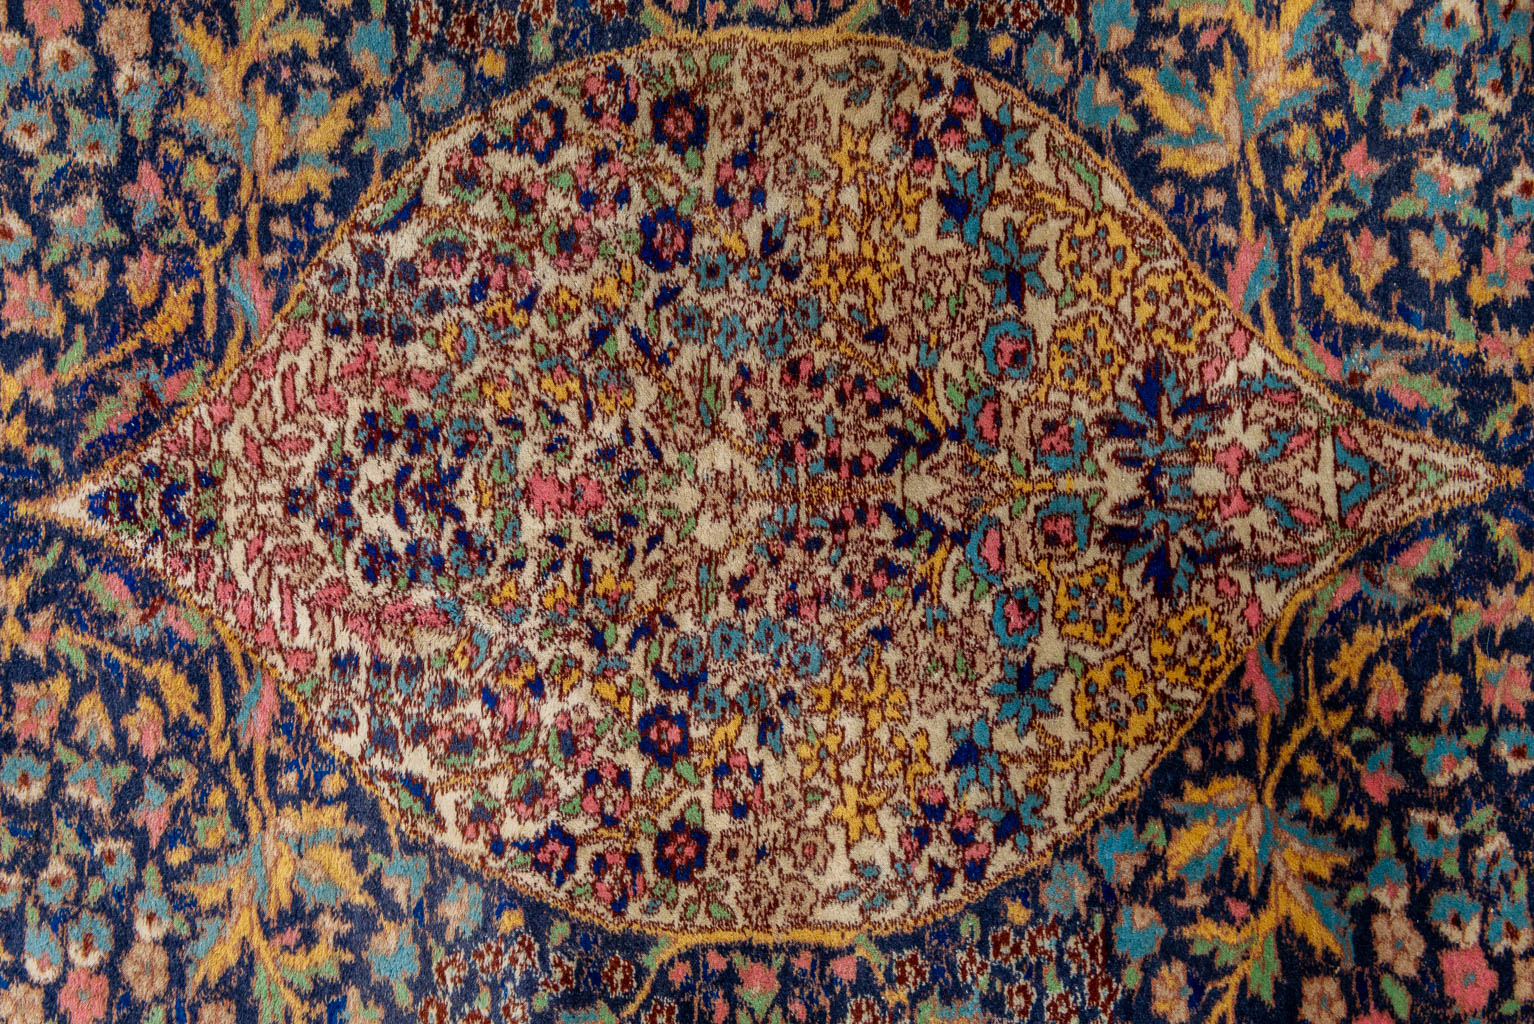 An oriental hand-made carpet. (228 x 148 cm)